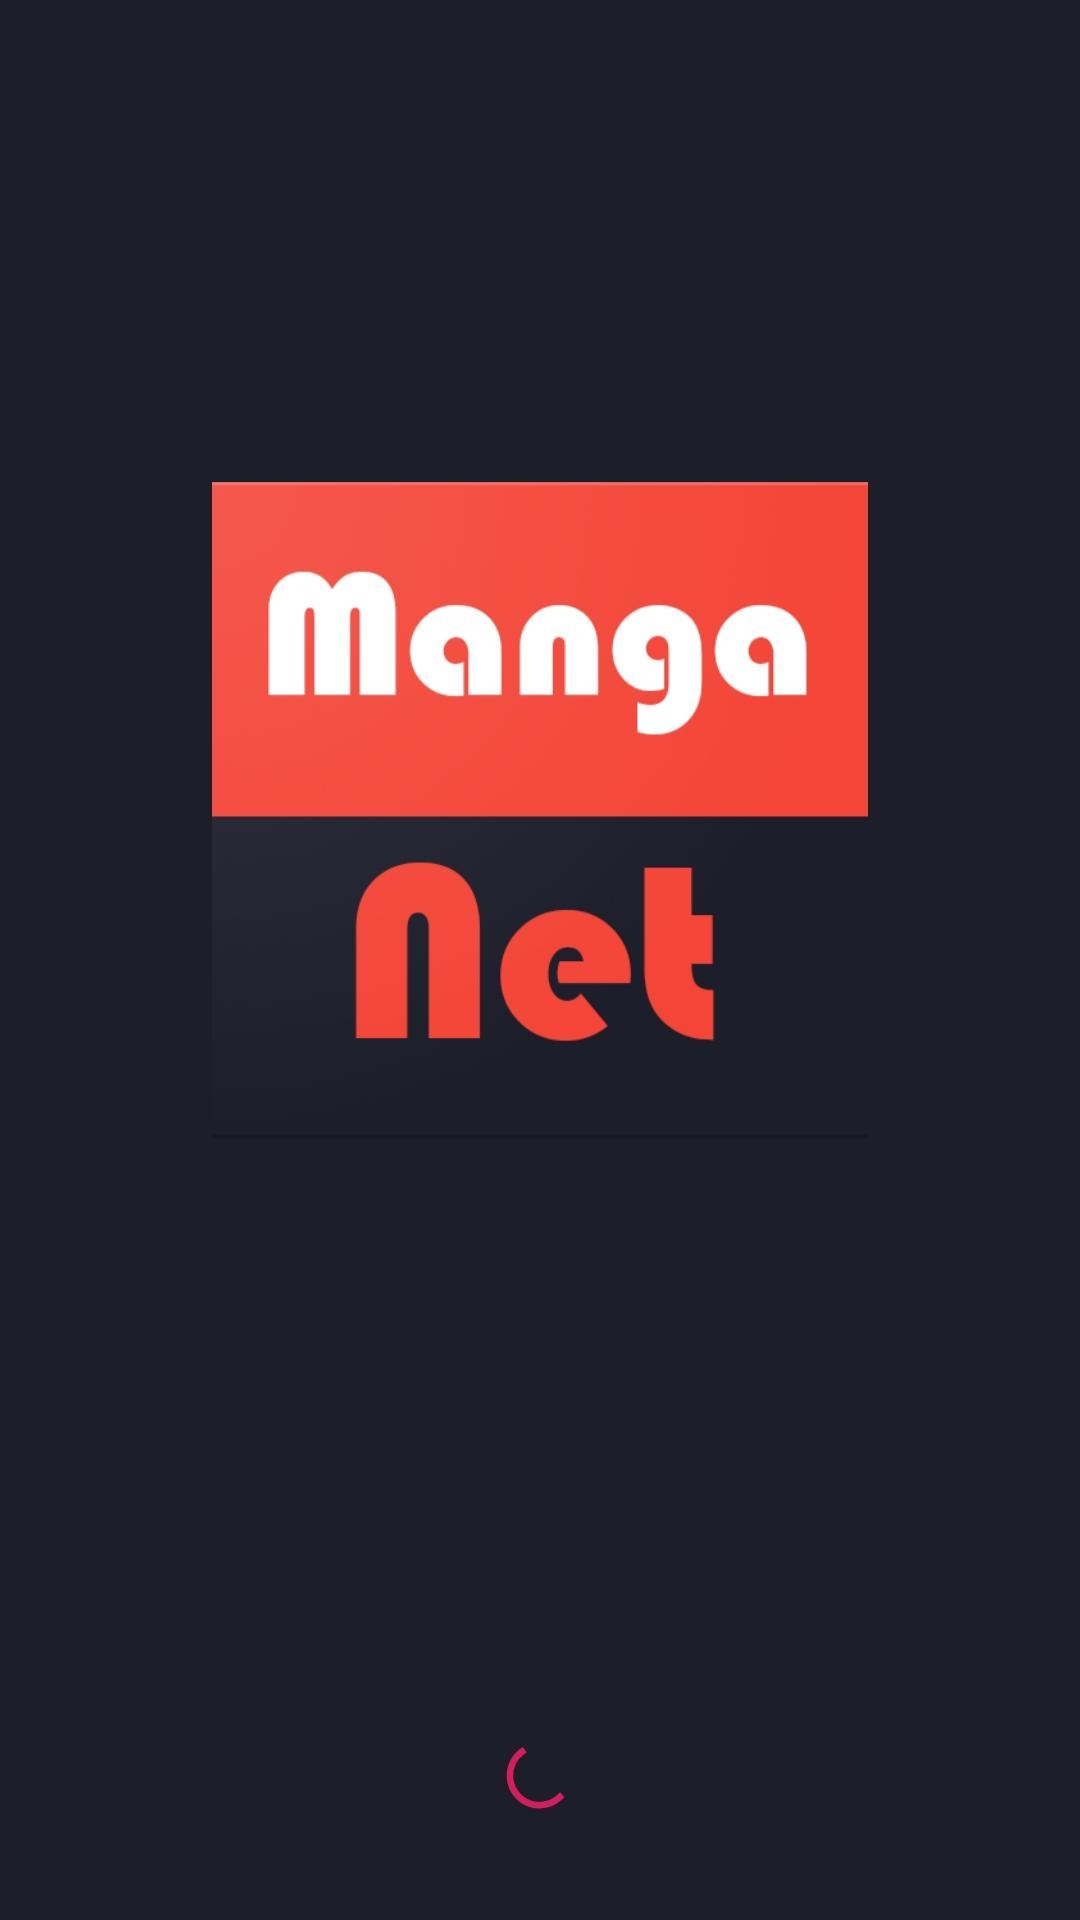 Manga Net